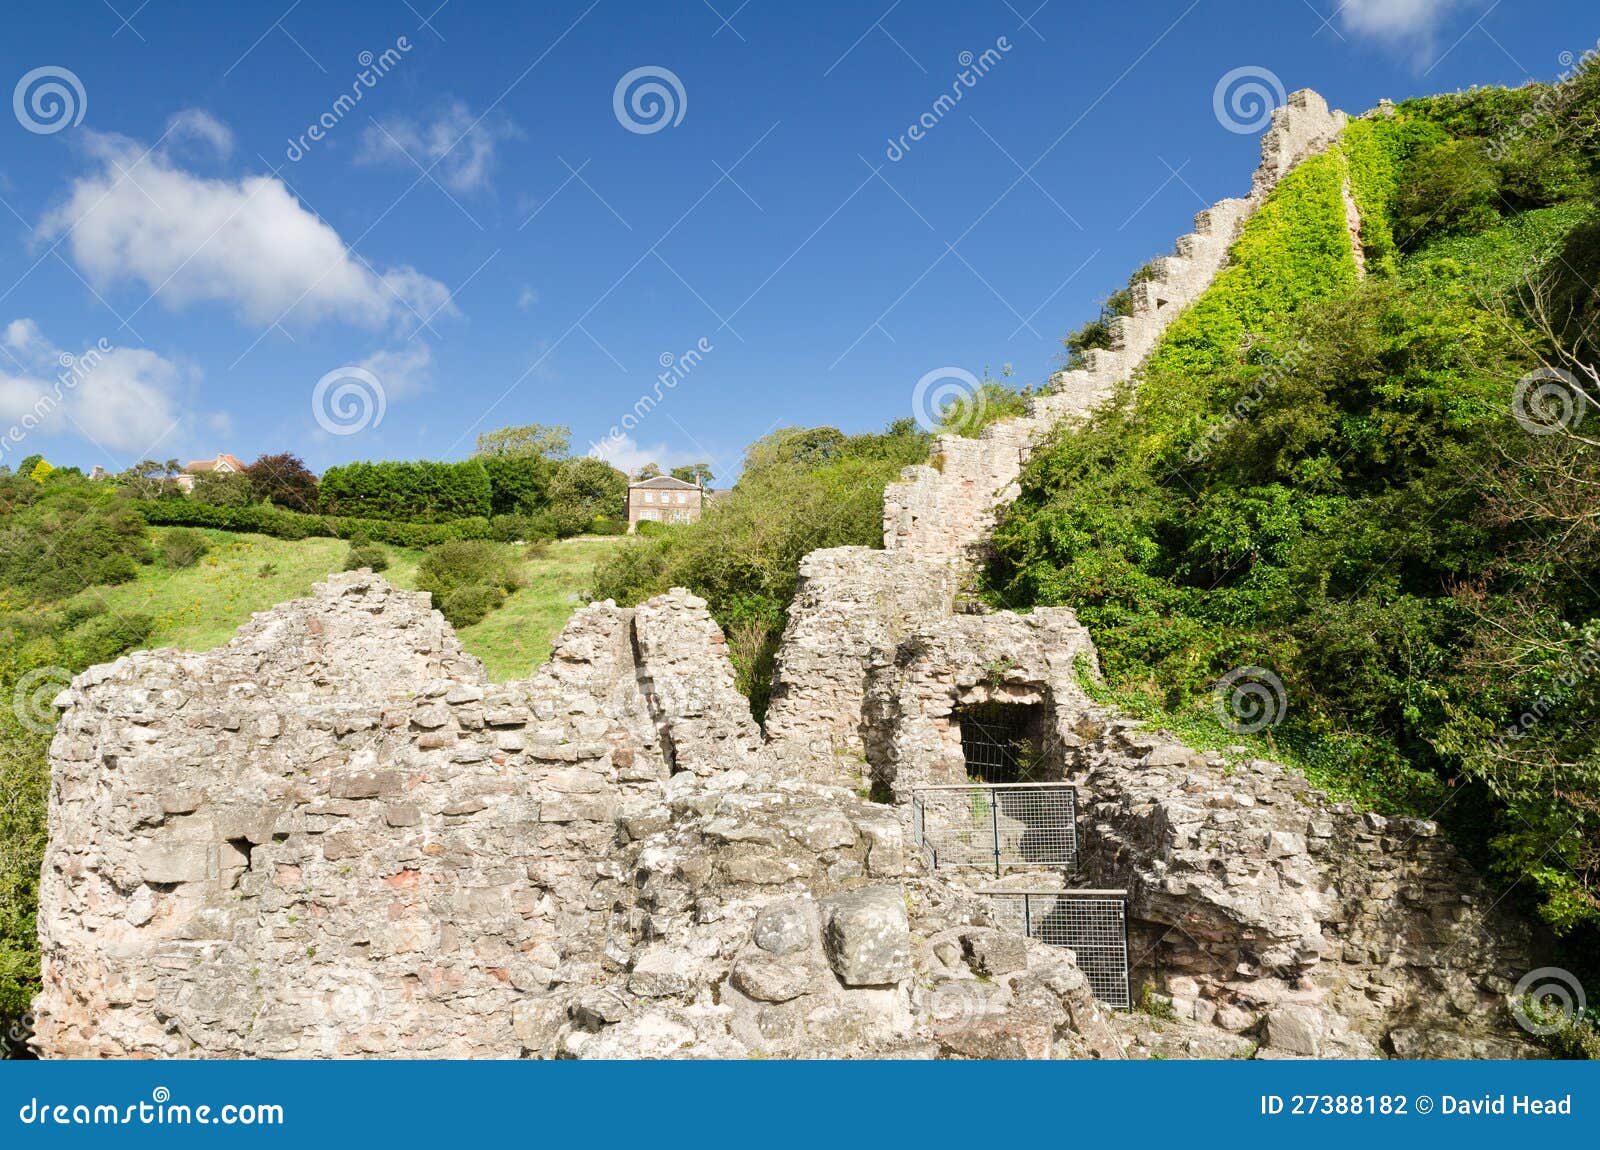 Pared blanca de Berwick. La pared defensiva que llevaba a partir del now arruinó totalmente el castillo en Berwick construyó 1296 también conocidos como escaleras de vértigo